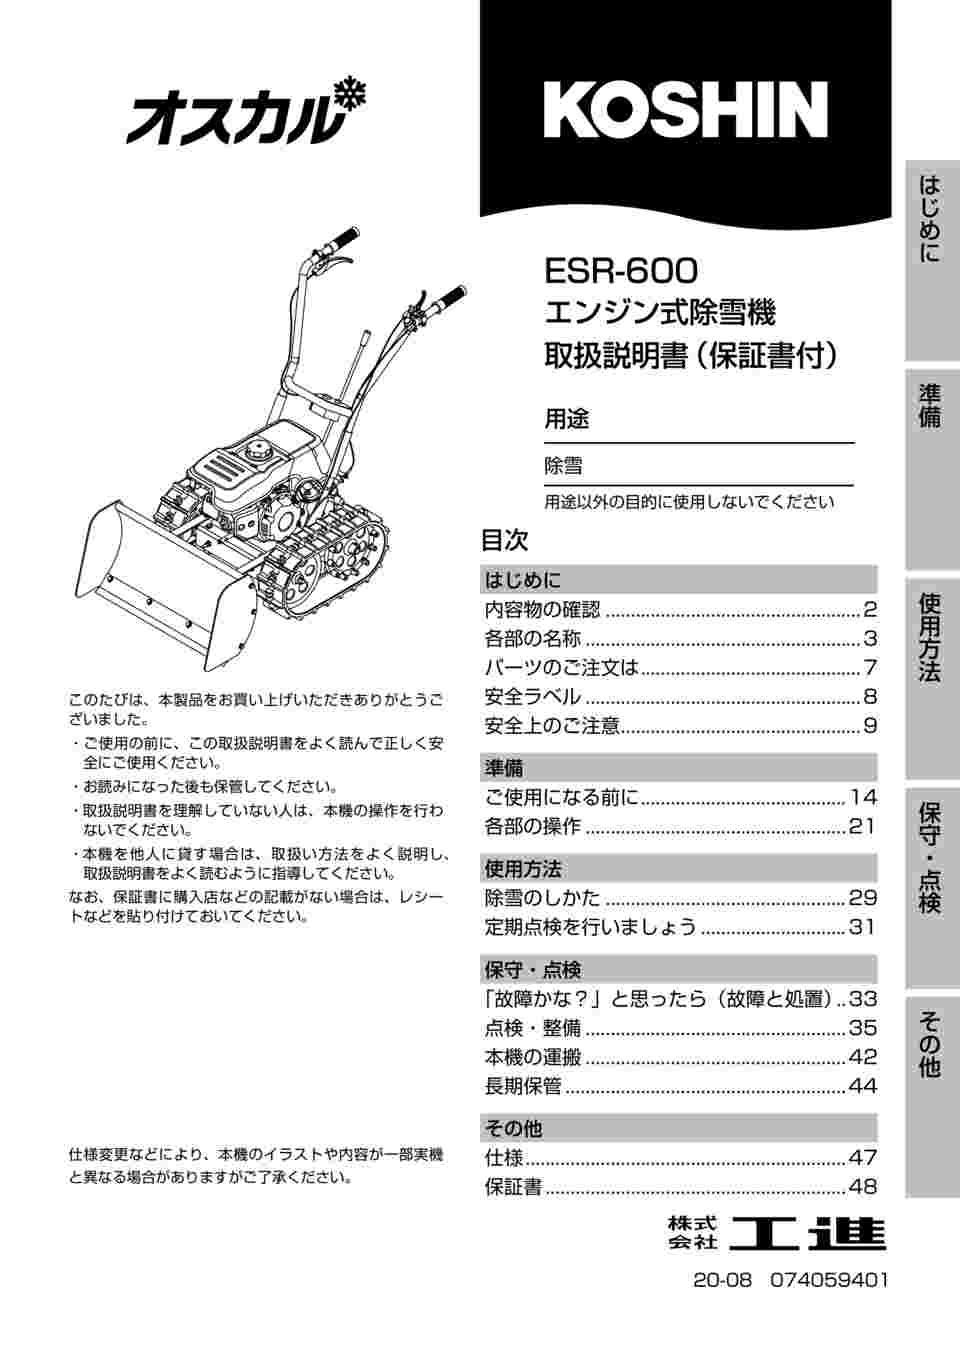 人気 伊藤農機ストア工進 エンジン式除雪機 ブレード式 ESR-600